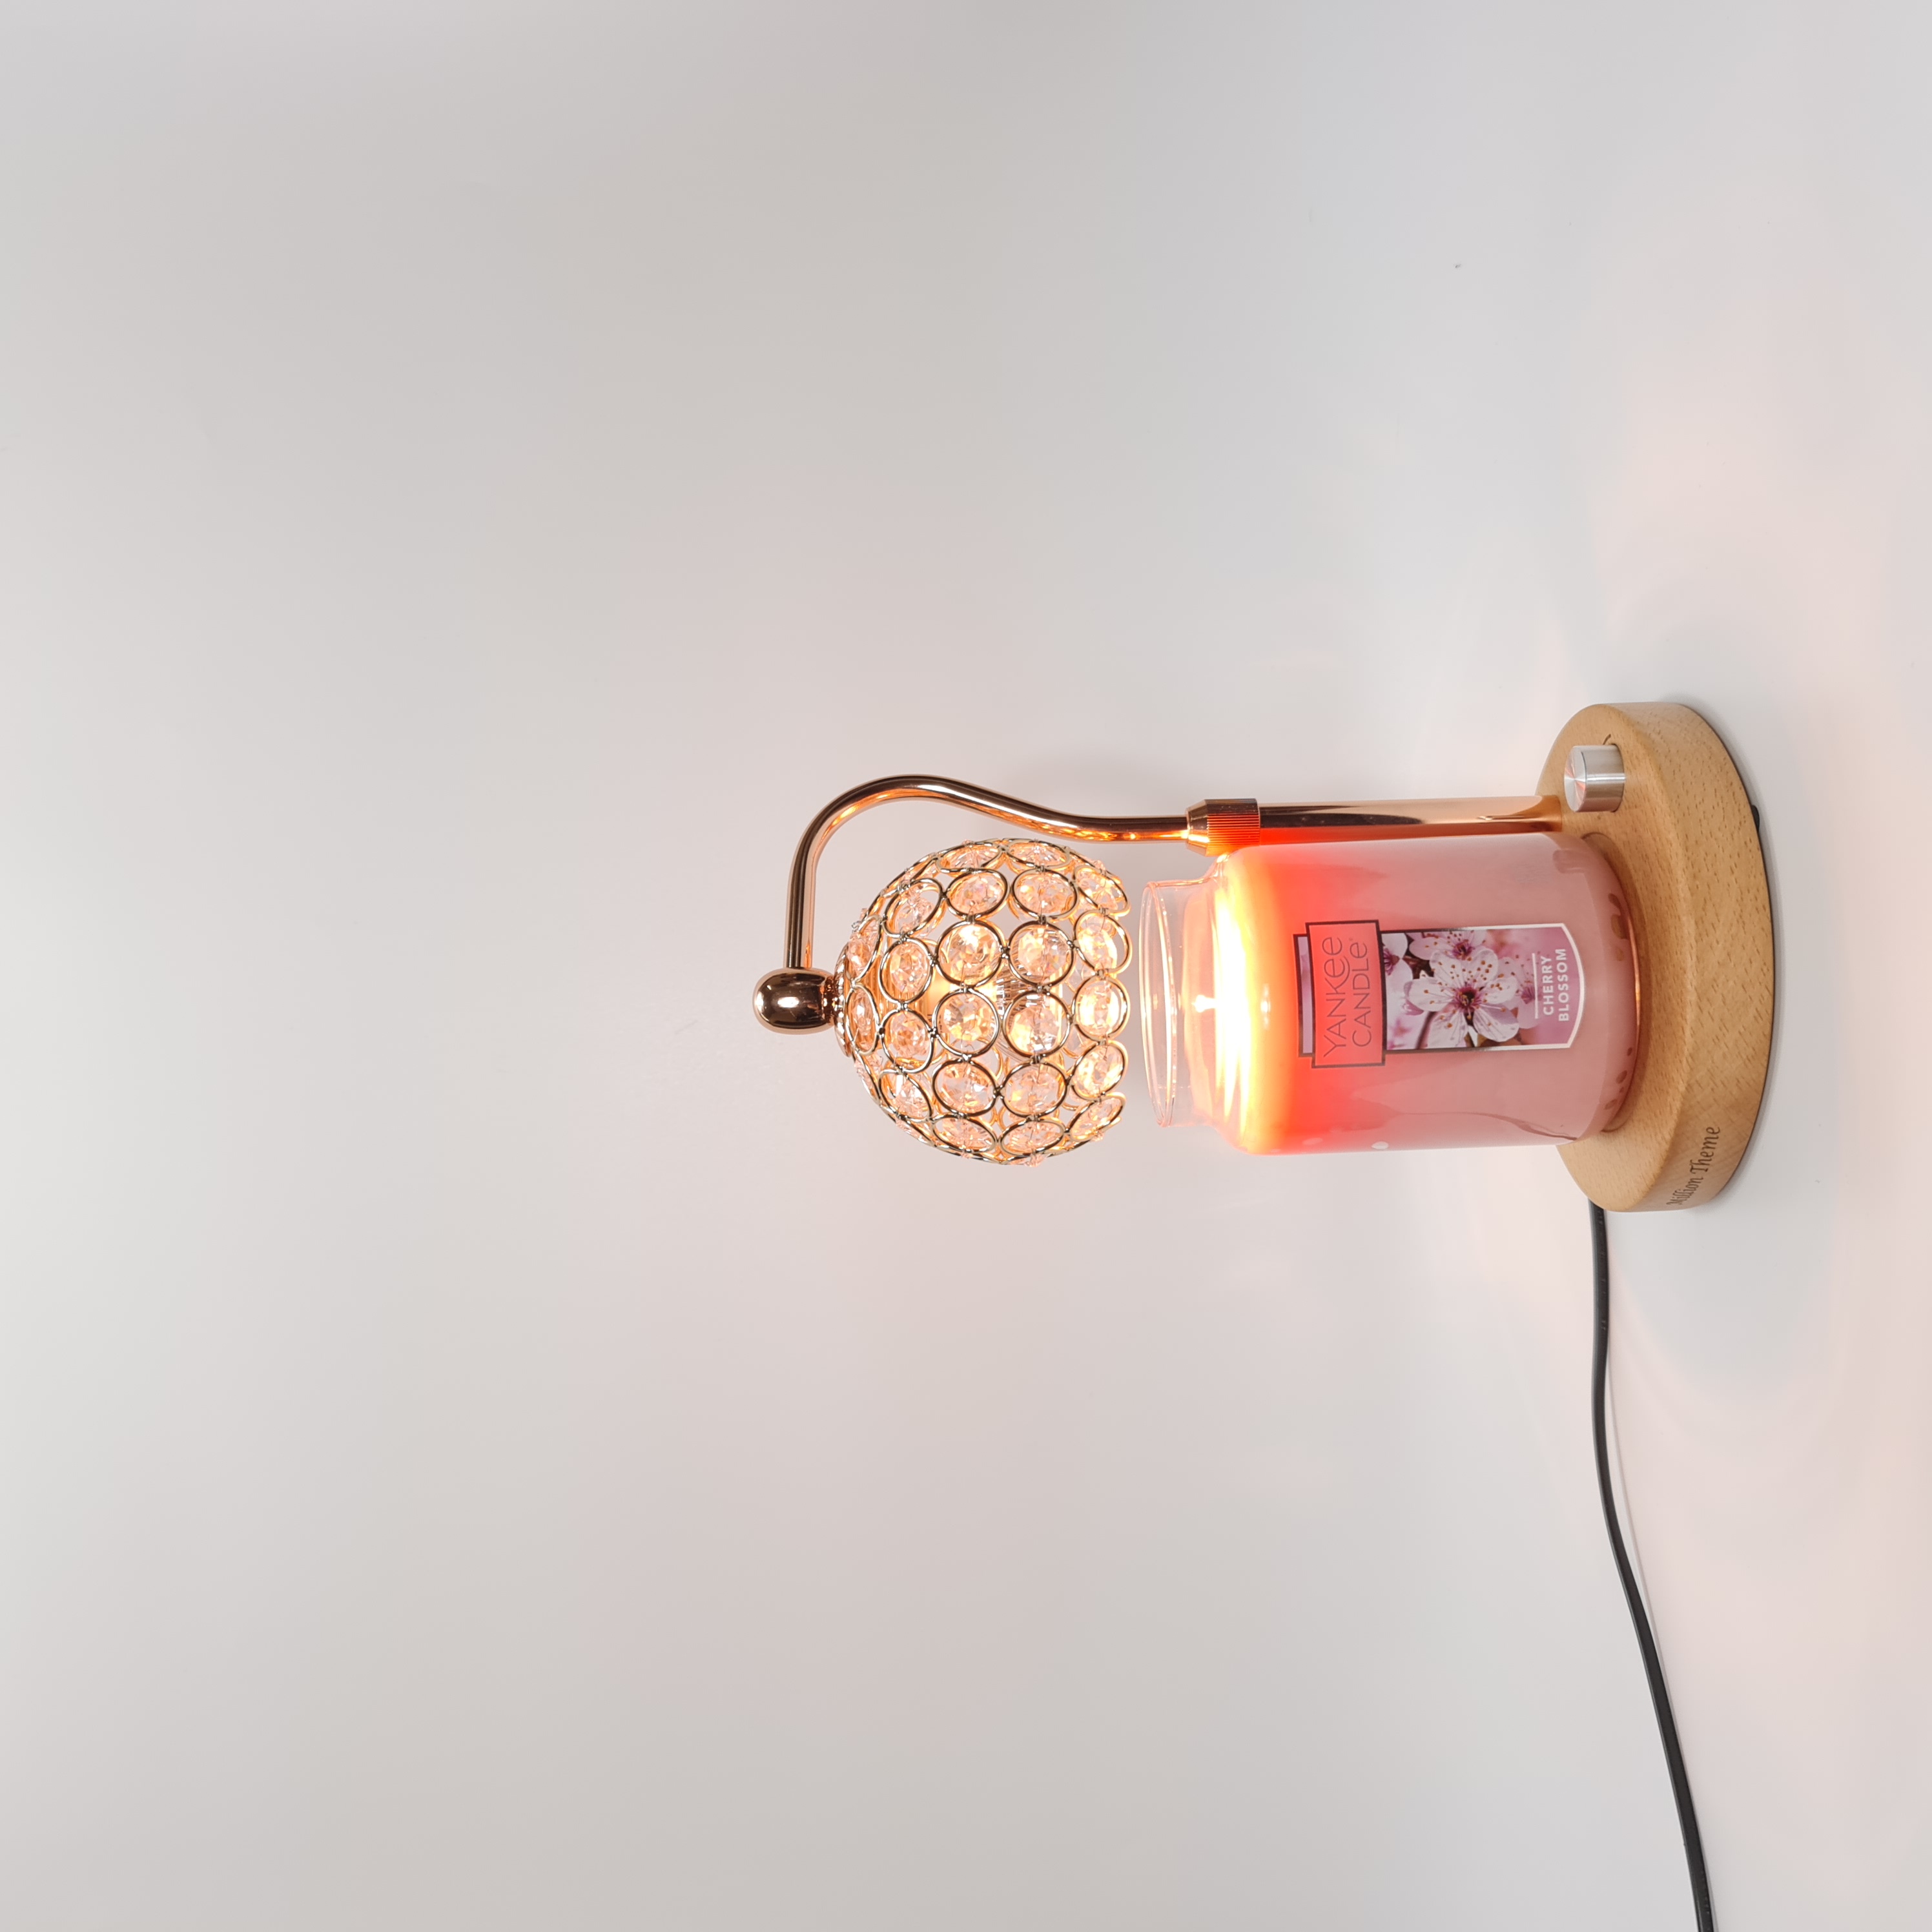 Đèn đốt nến thơm - Warmer Candles GU10 35W - điều chỉnh được chiều cao độ sáng, đèn vàng đế tròn vàng